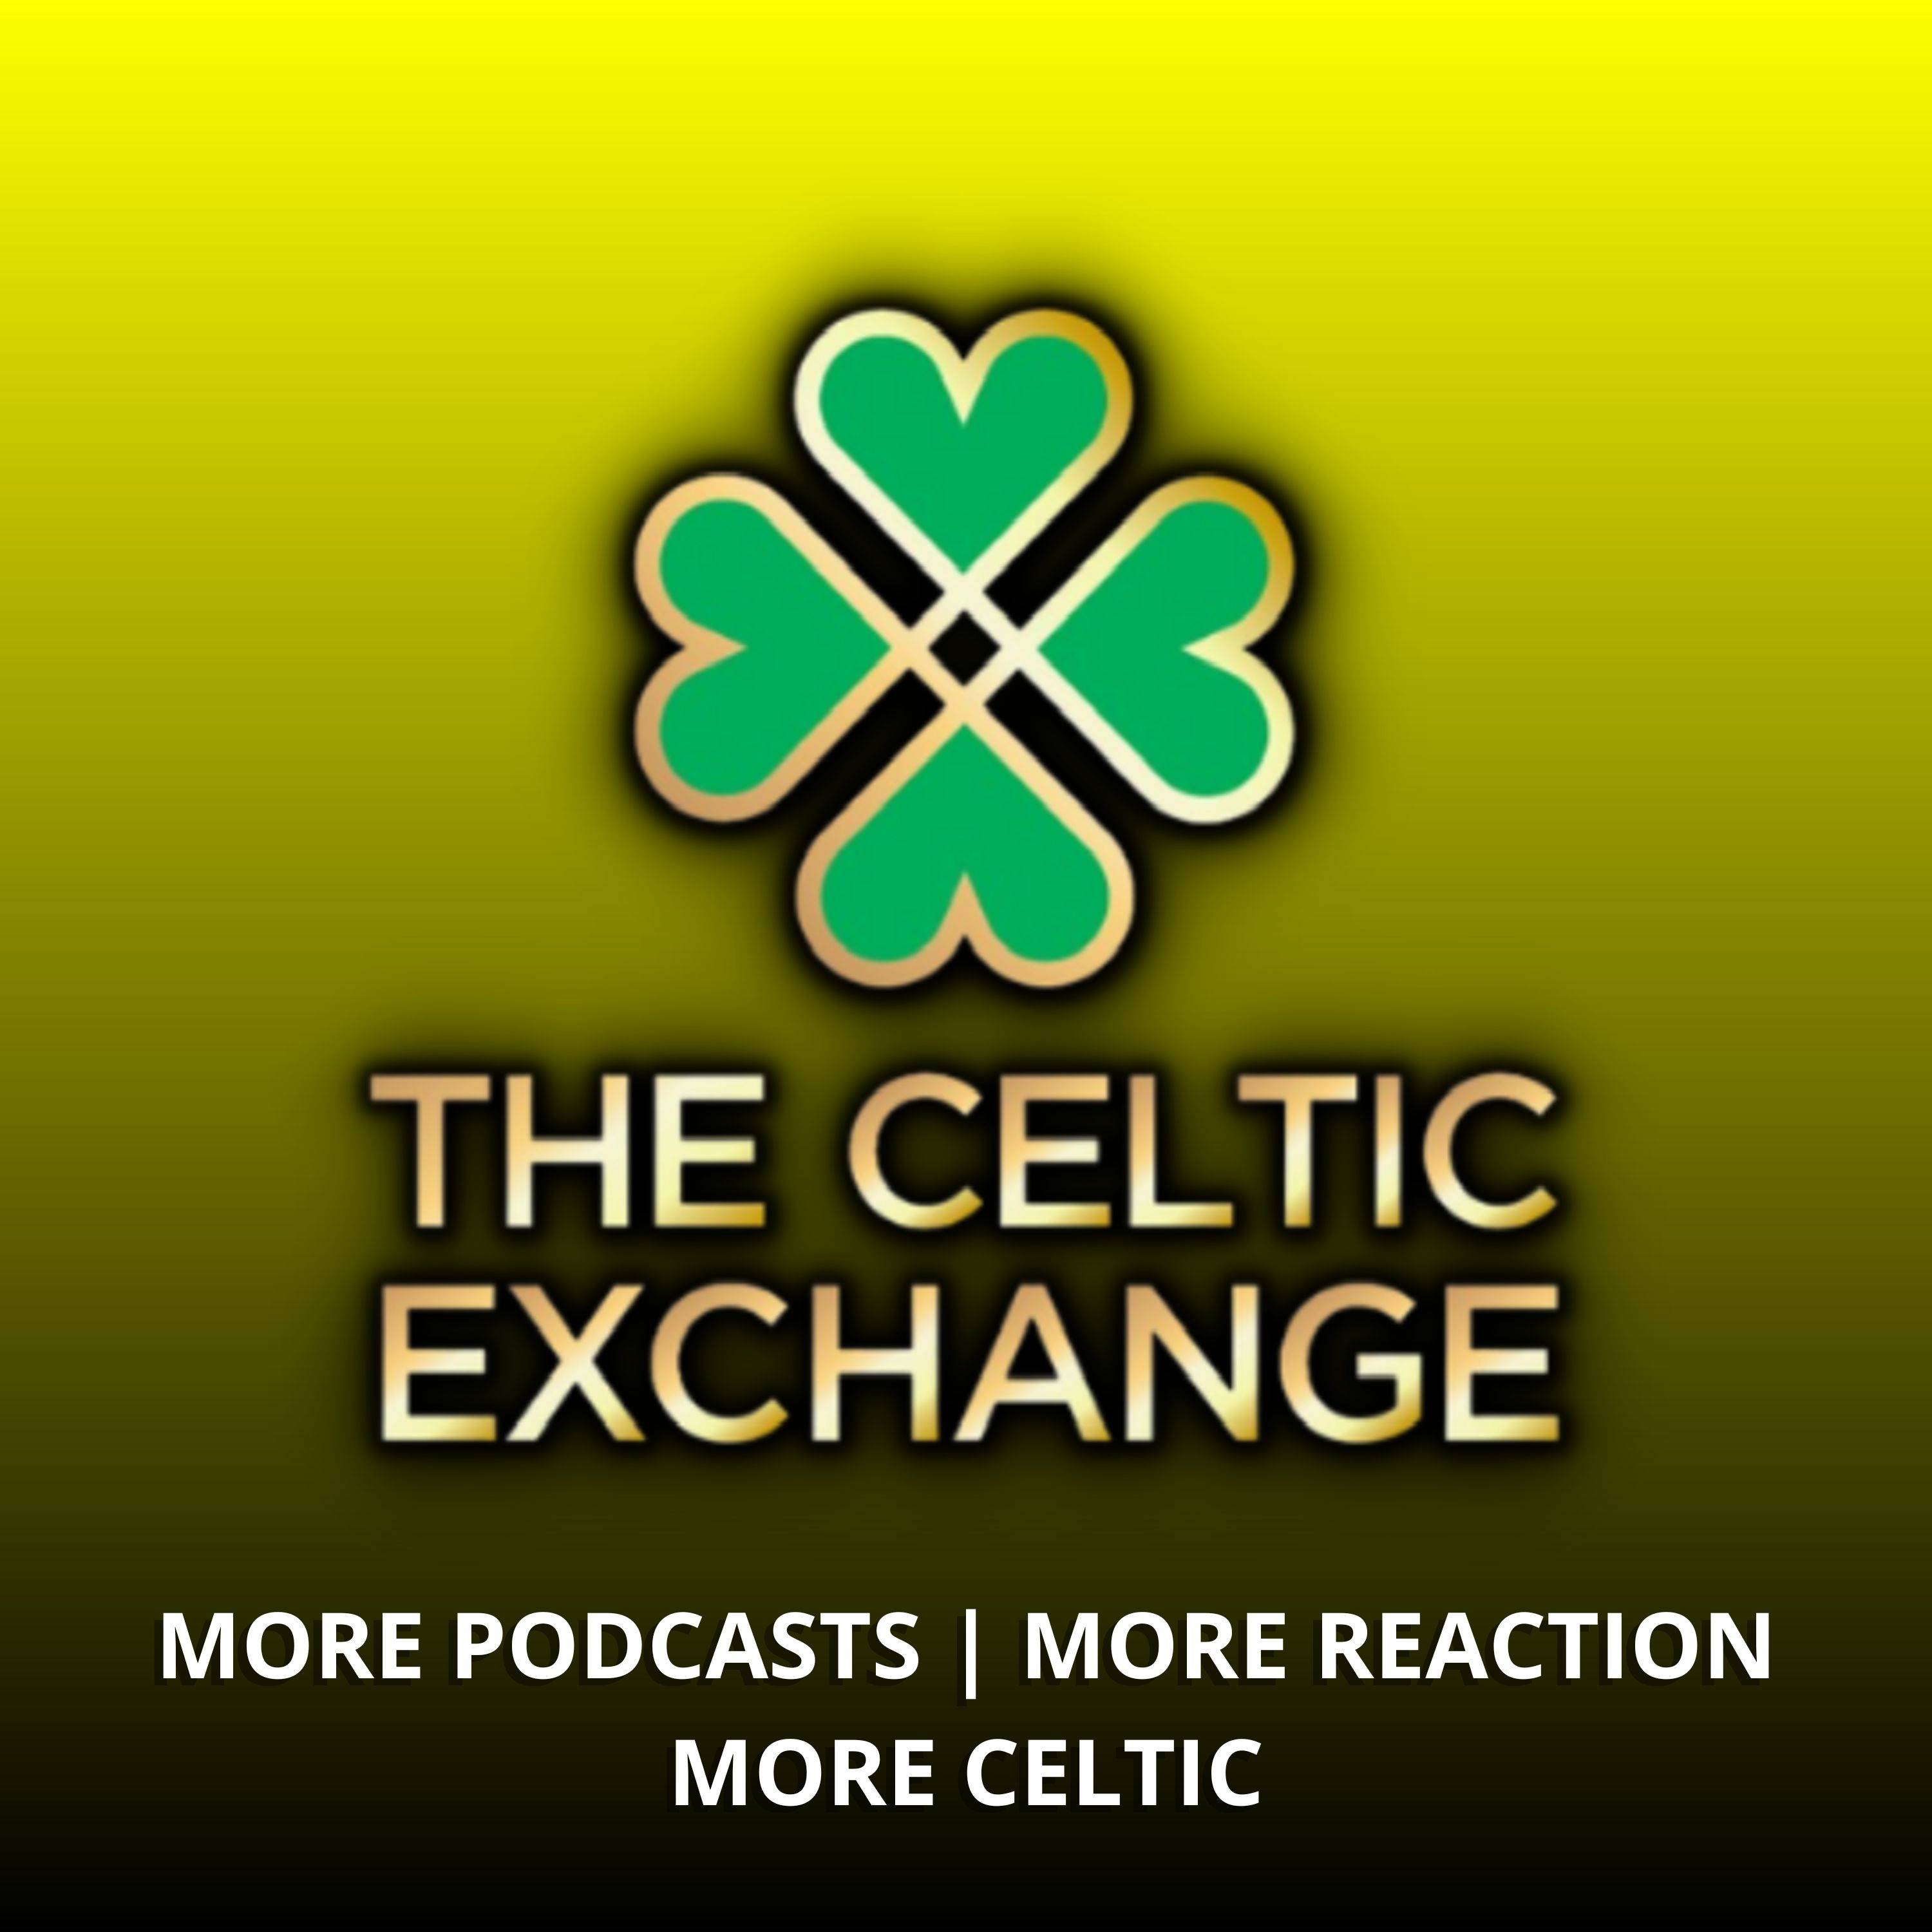 Celtic Exchange Weekly: Rodgers Bites Back As Bhoys Dig Deep